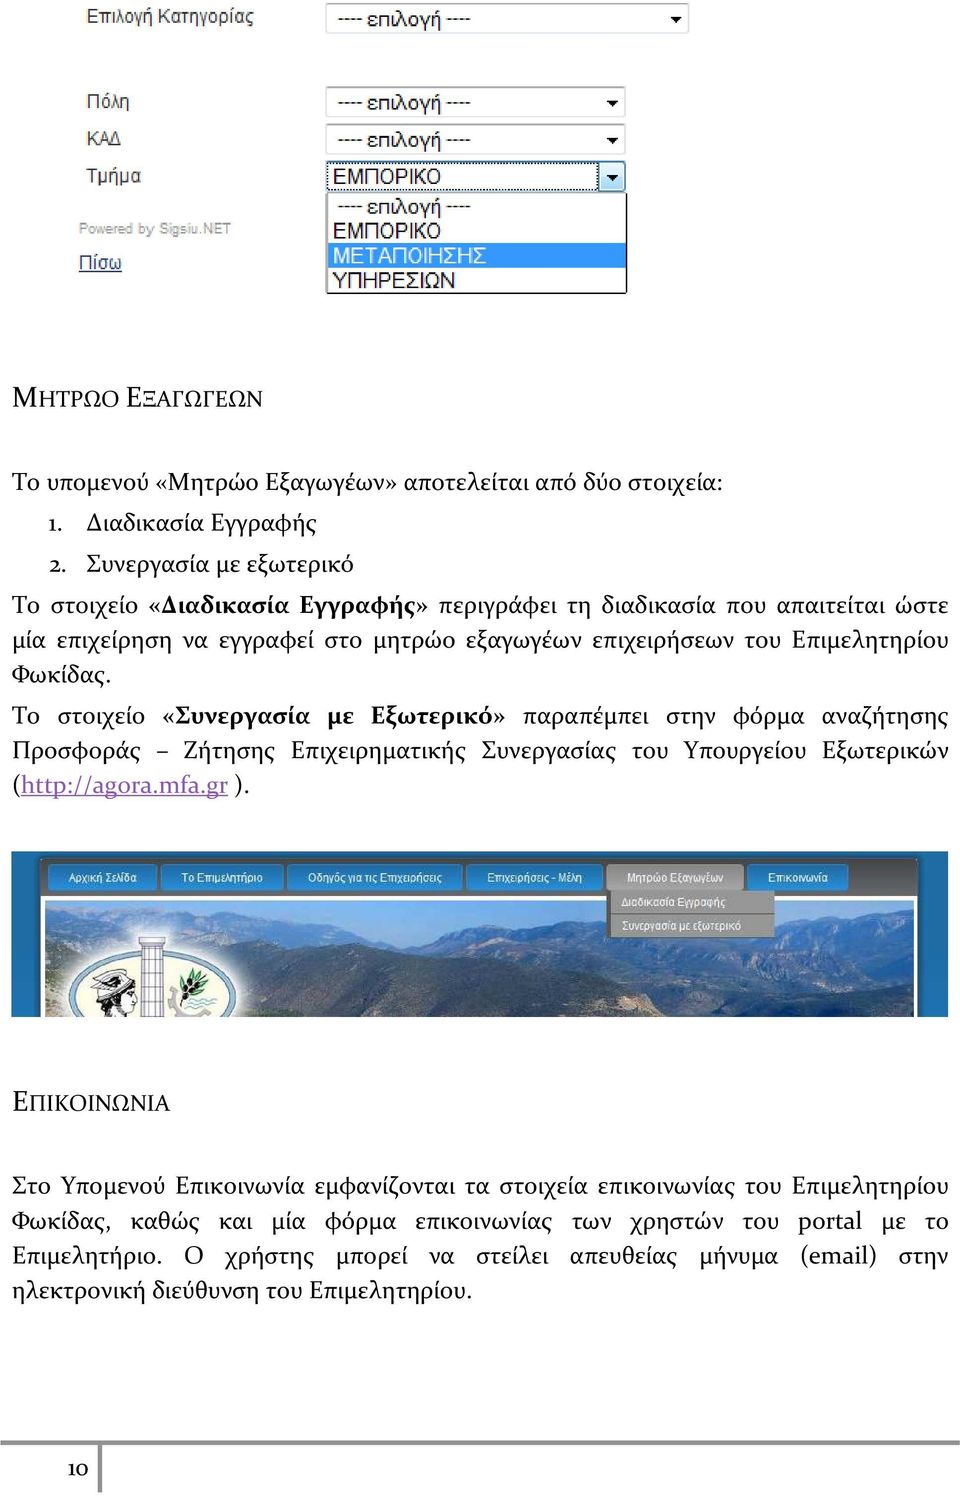 Φωκίδας. Το στοιχείο «Συνεργασία με Εξωτερικό» παραπέμπει στην φόρμα αναζήτησης Προσφοράς Ζήτησης Επιχειρηματικής Συνεργασίας του Υπουργείου Εξωτερικών (http://agora.mfa.gr ).